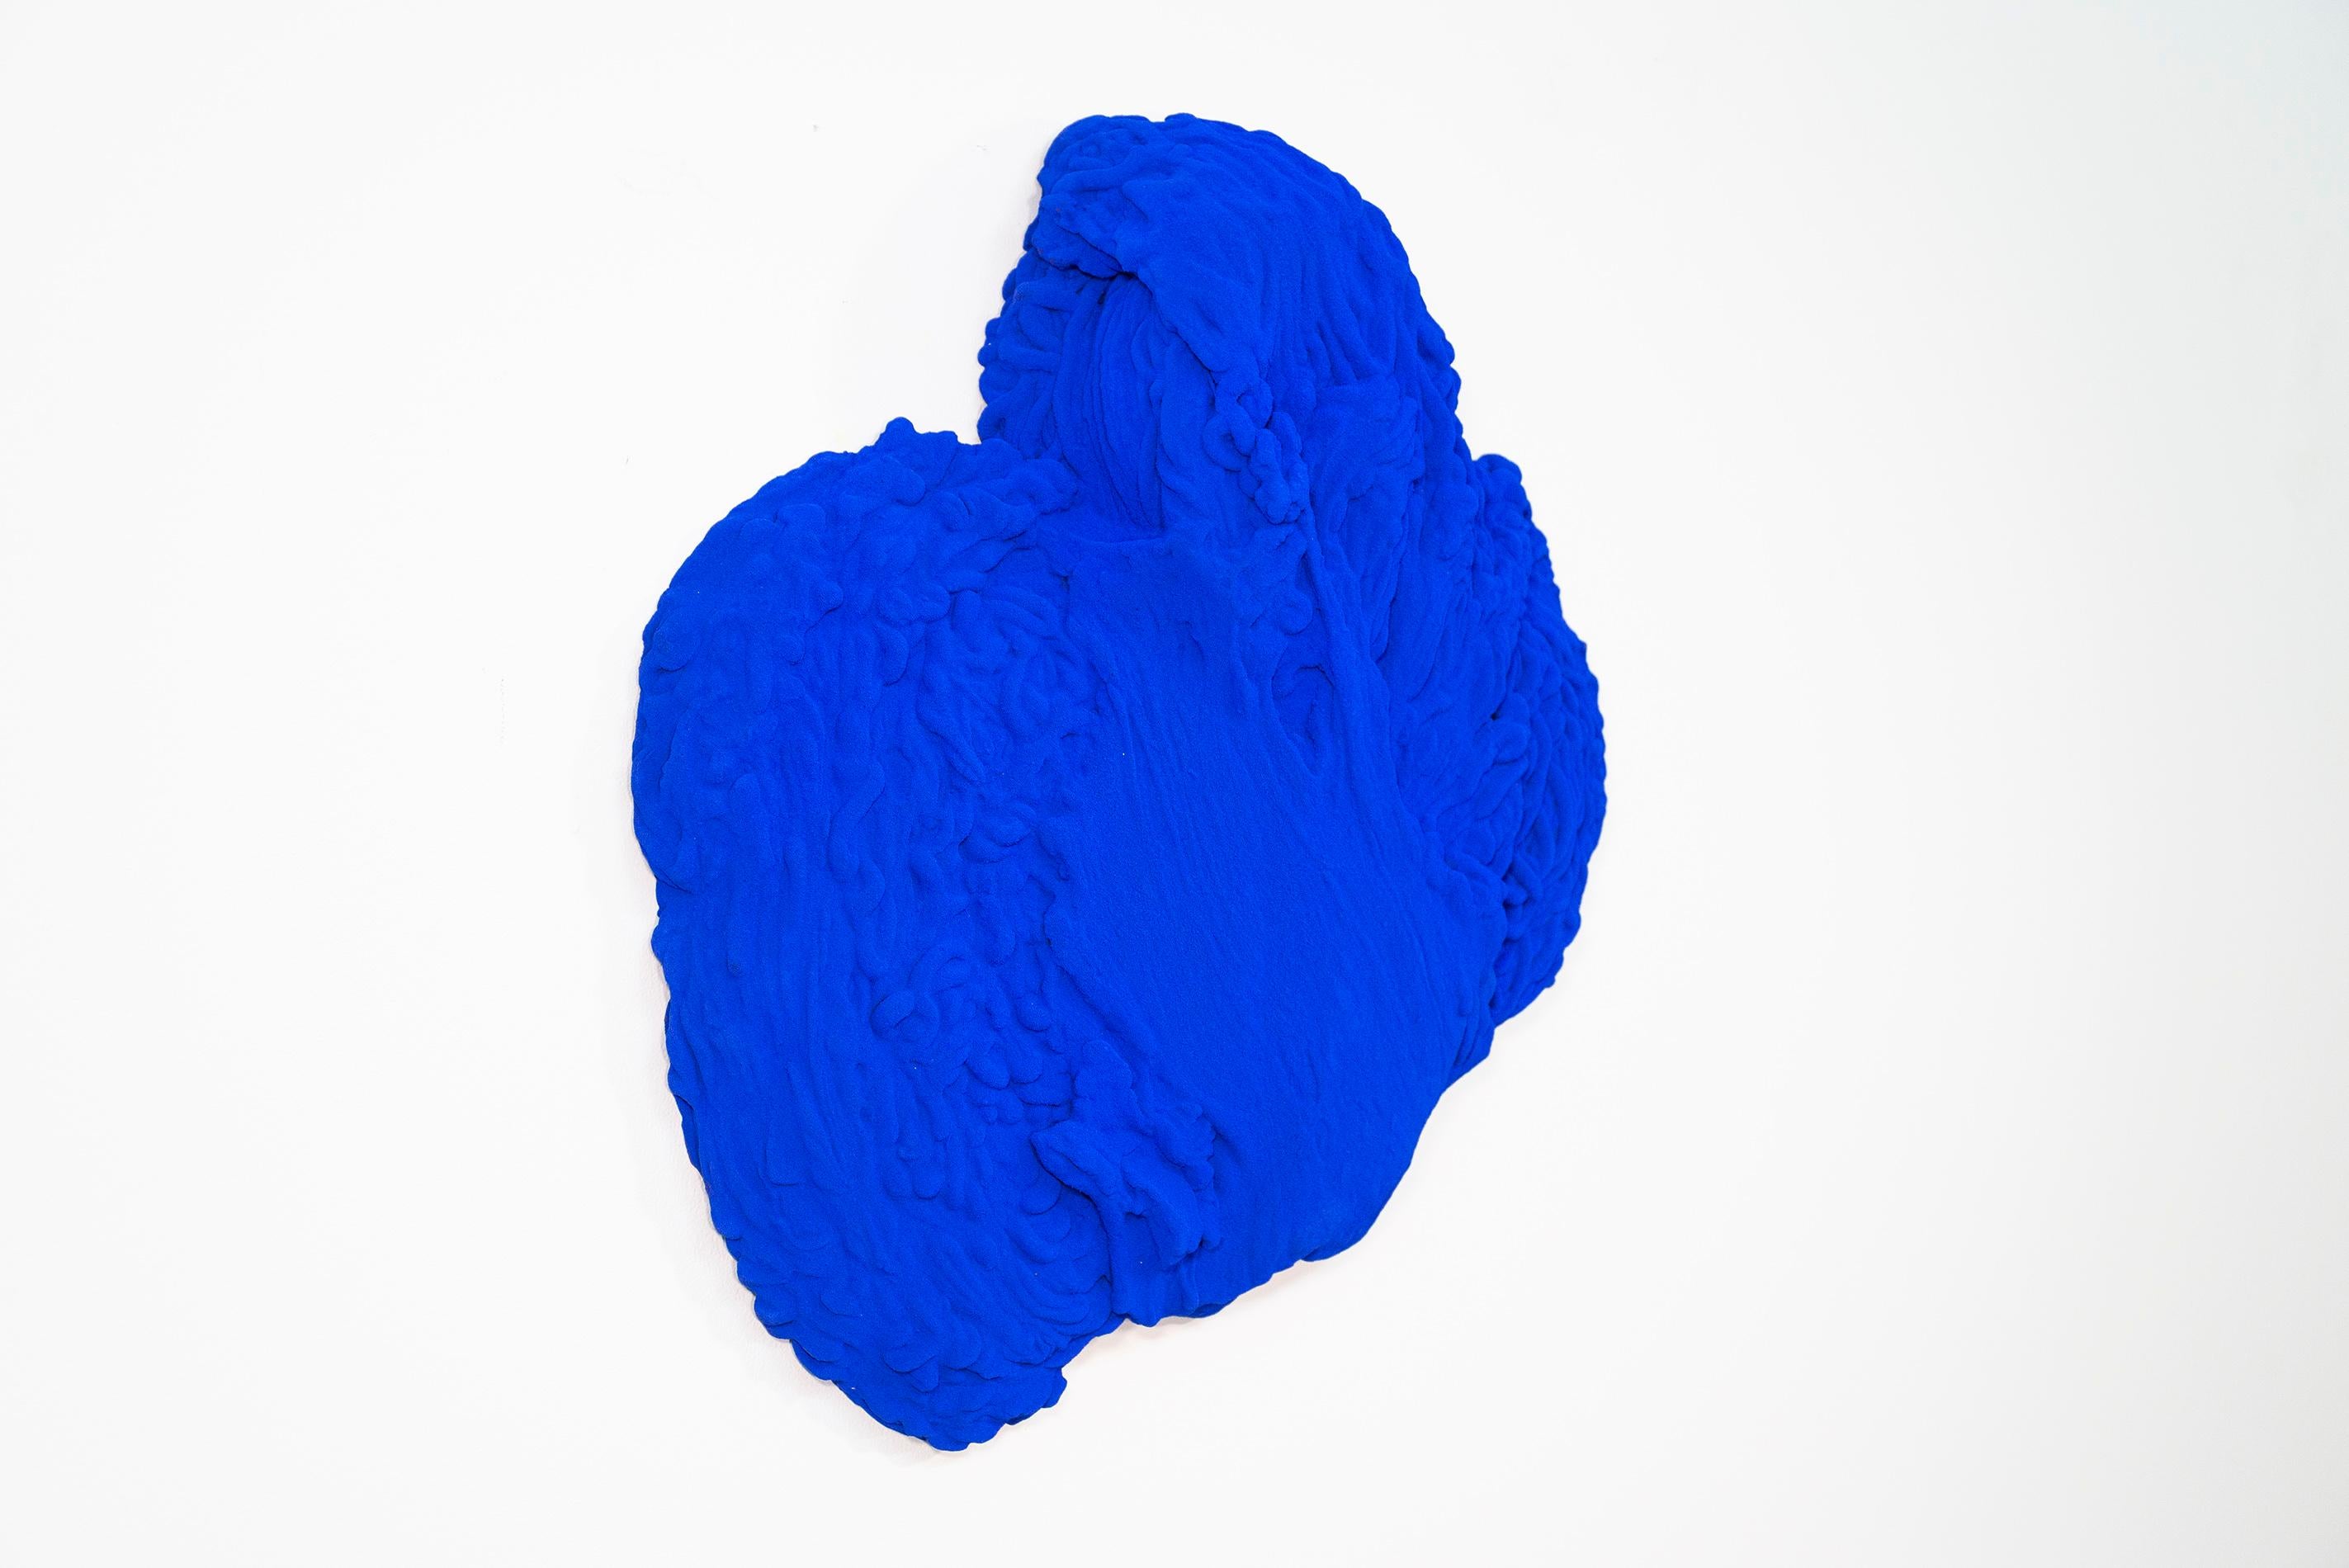 Blue Matter 2 - matte, blue, textured, abstract, mixed media wall sculpture - Contemporary Sculpture by Shayne Dark